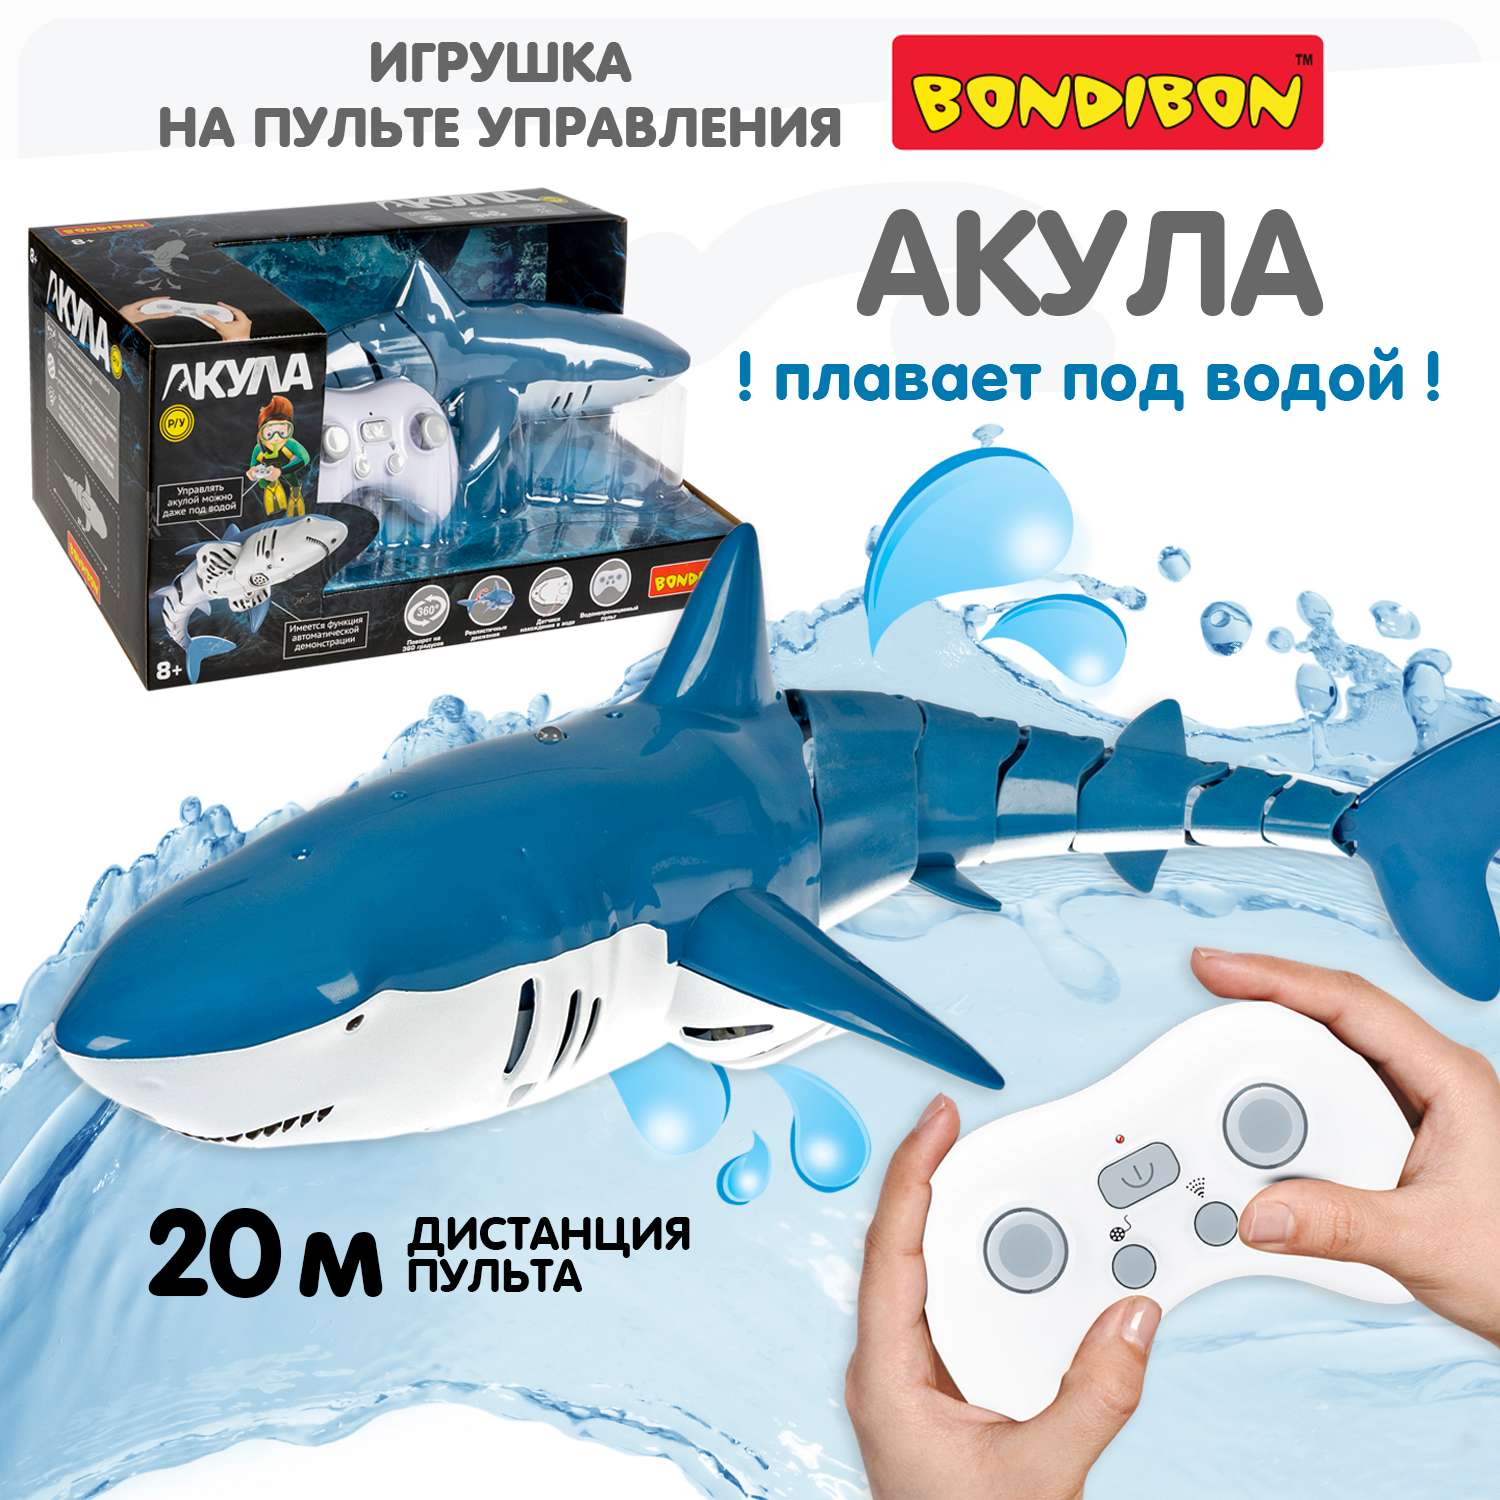 Мягкая игрушка Акула 98 см | Интернет-магазин детских игрушек luchistii-sudak.ru